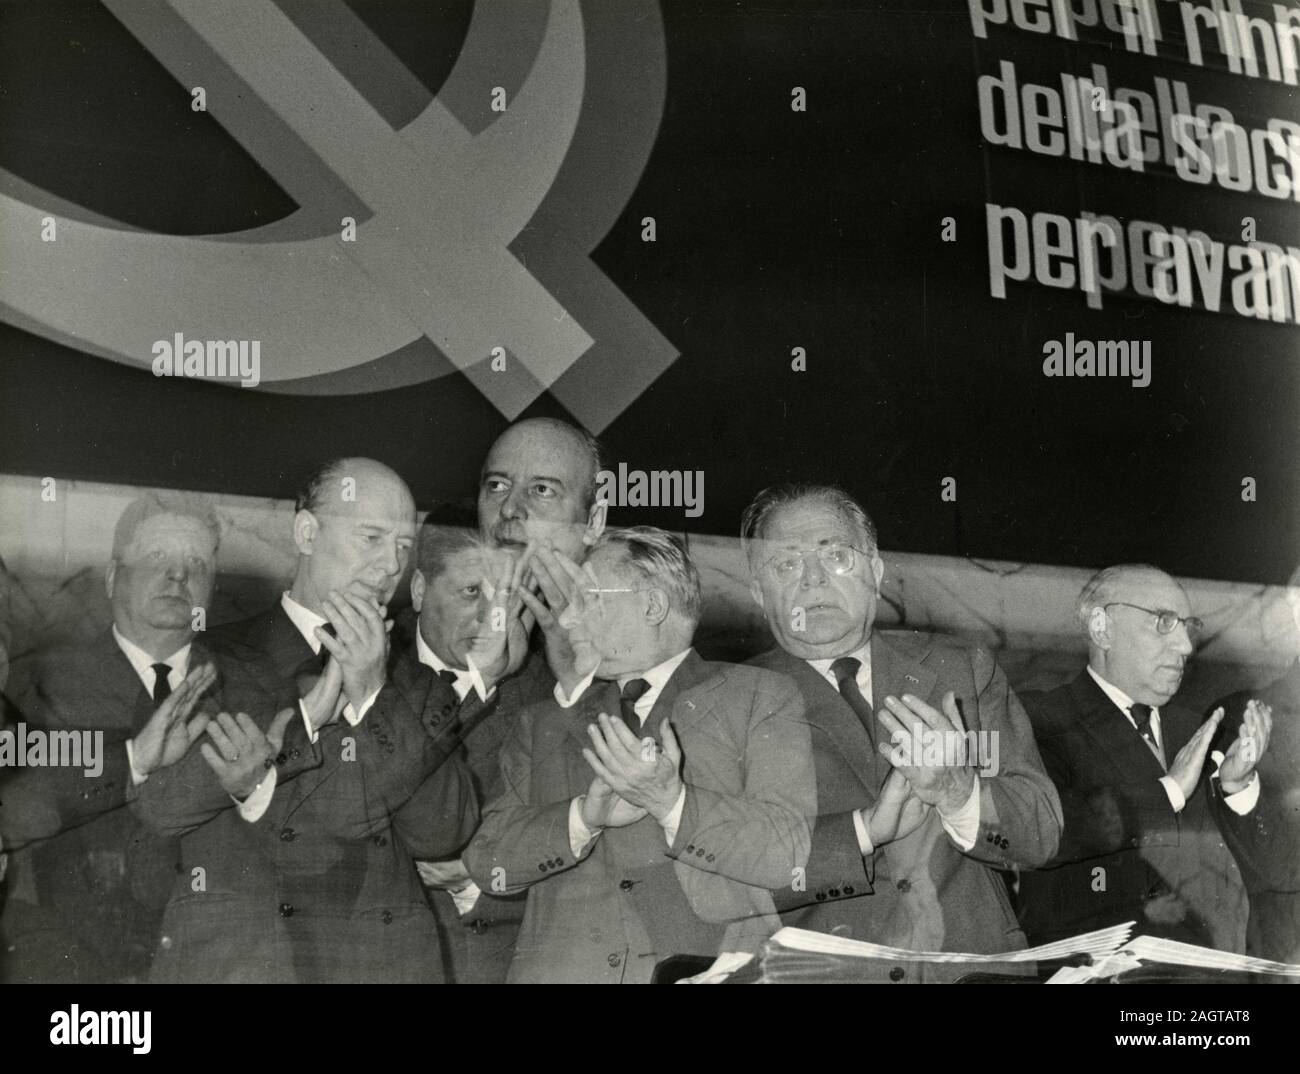 Italian politicians Amendola, Pajetta, Palmiro Togliatti, and Scoccimarro during the communist party congress, Rome, Italy 1960s Stock Photo